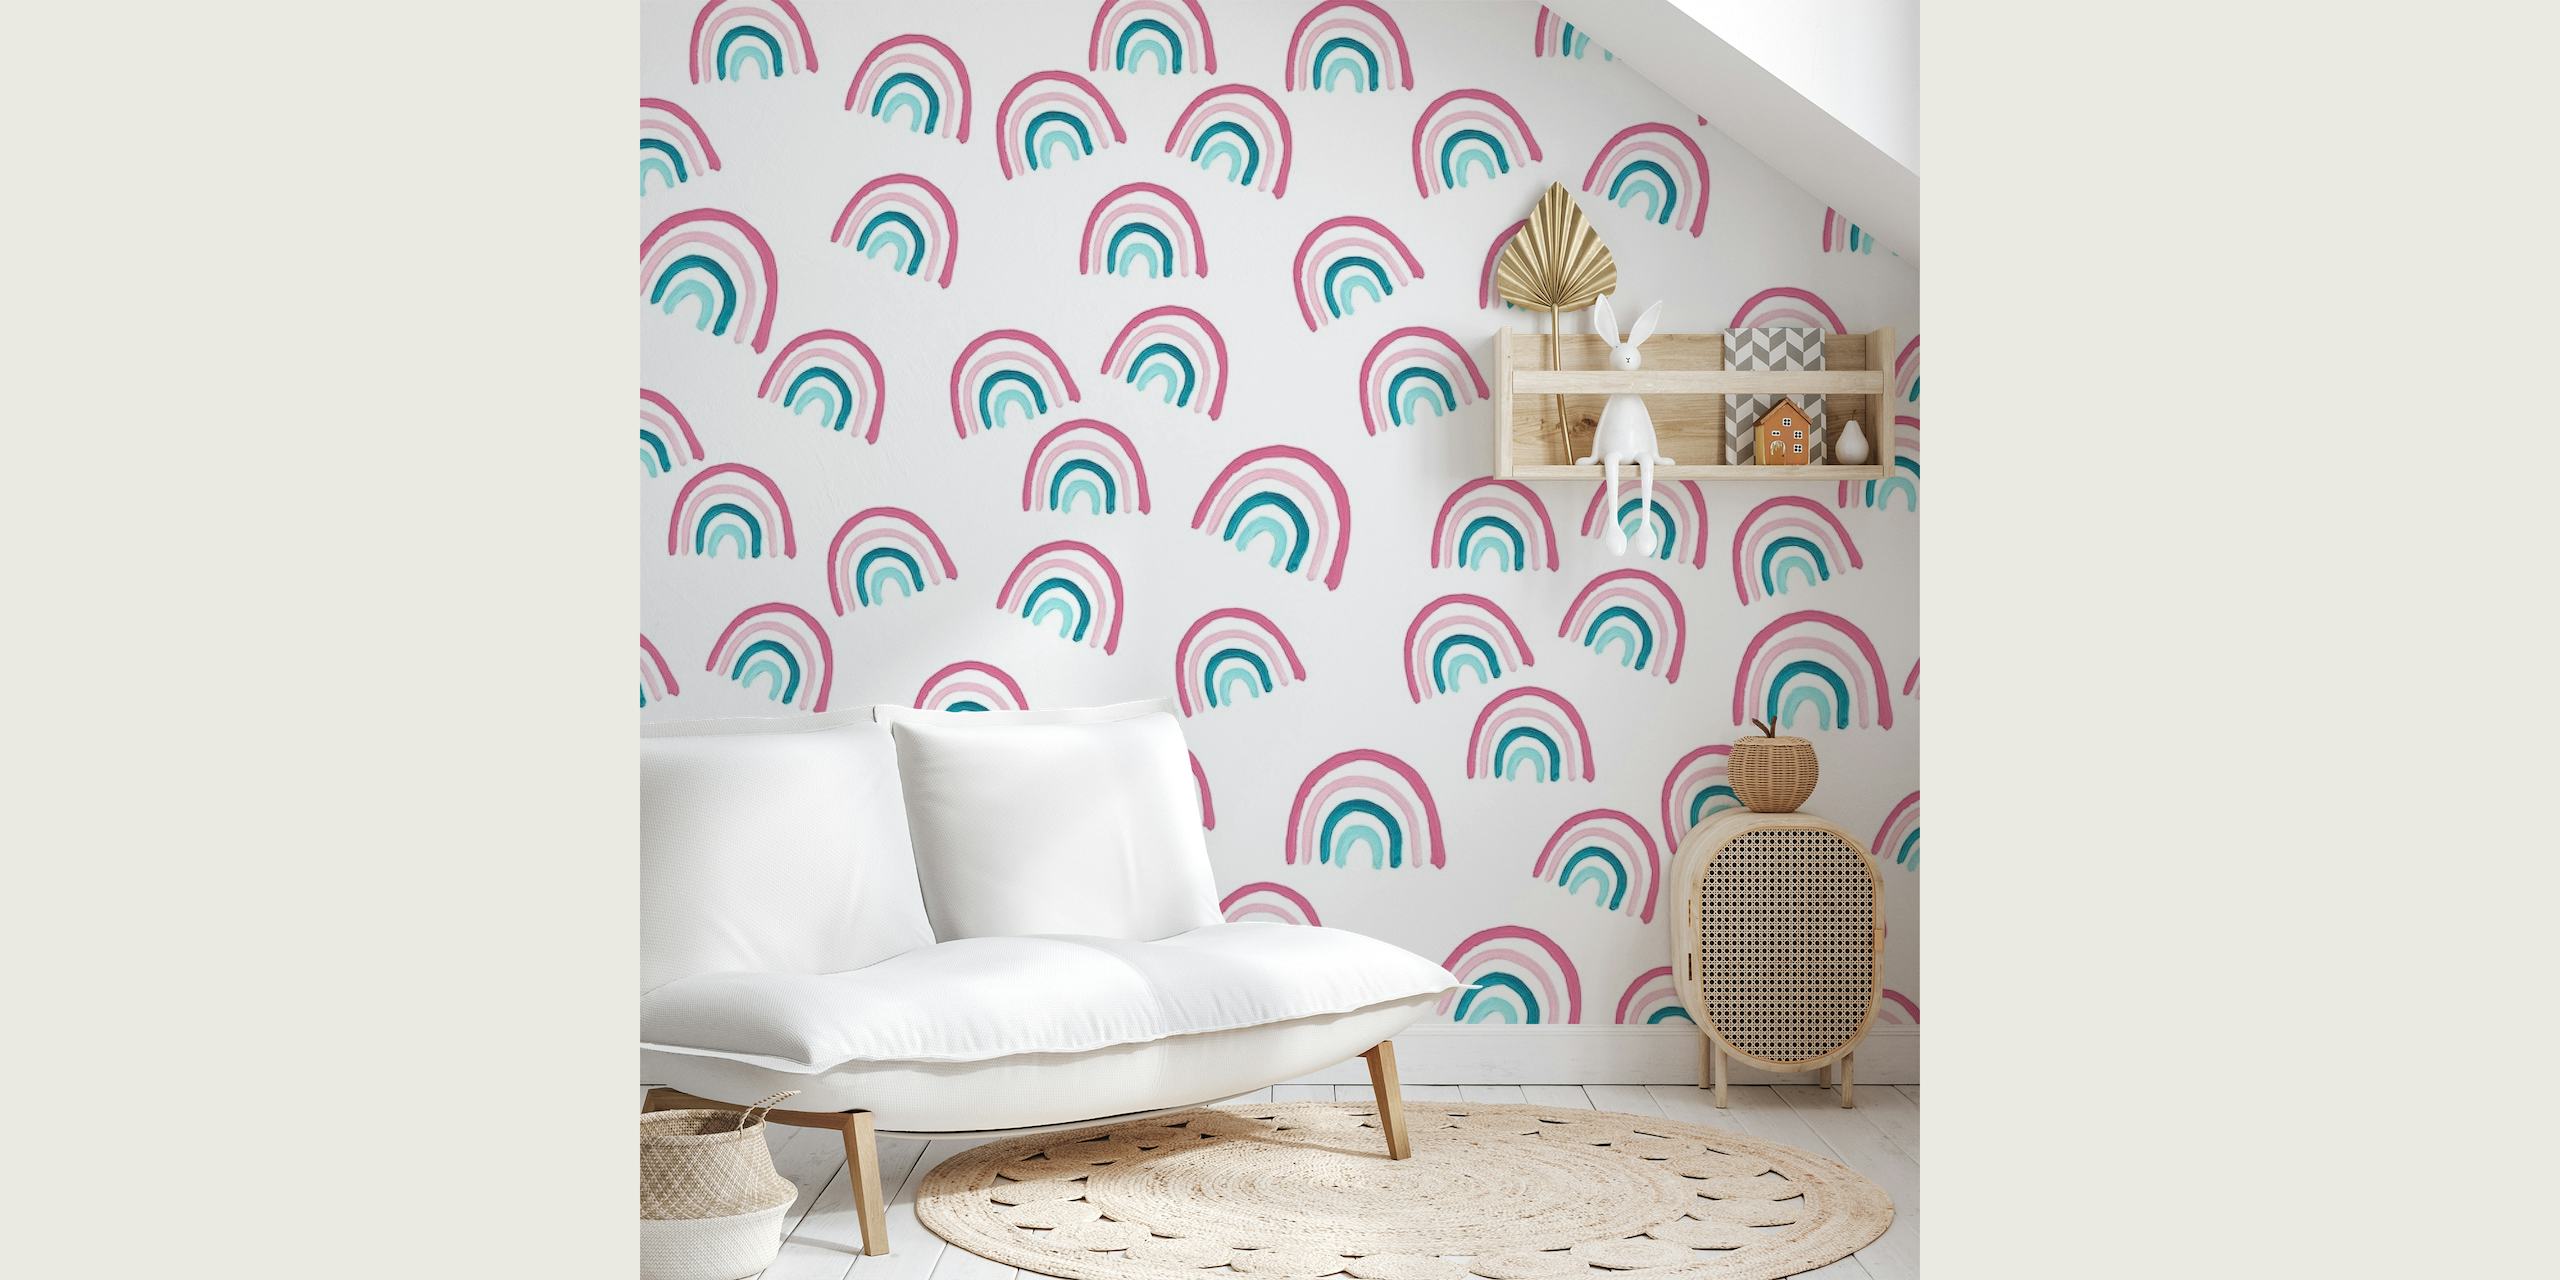 Pastelkleurige regenboogpatroon muurschildering met zachte roze en blauwgroen op een witte achtergrond